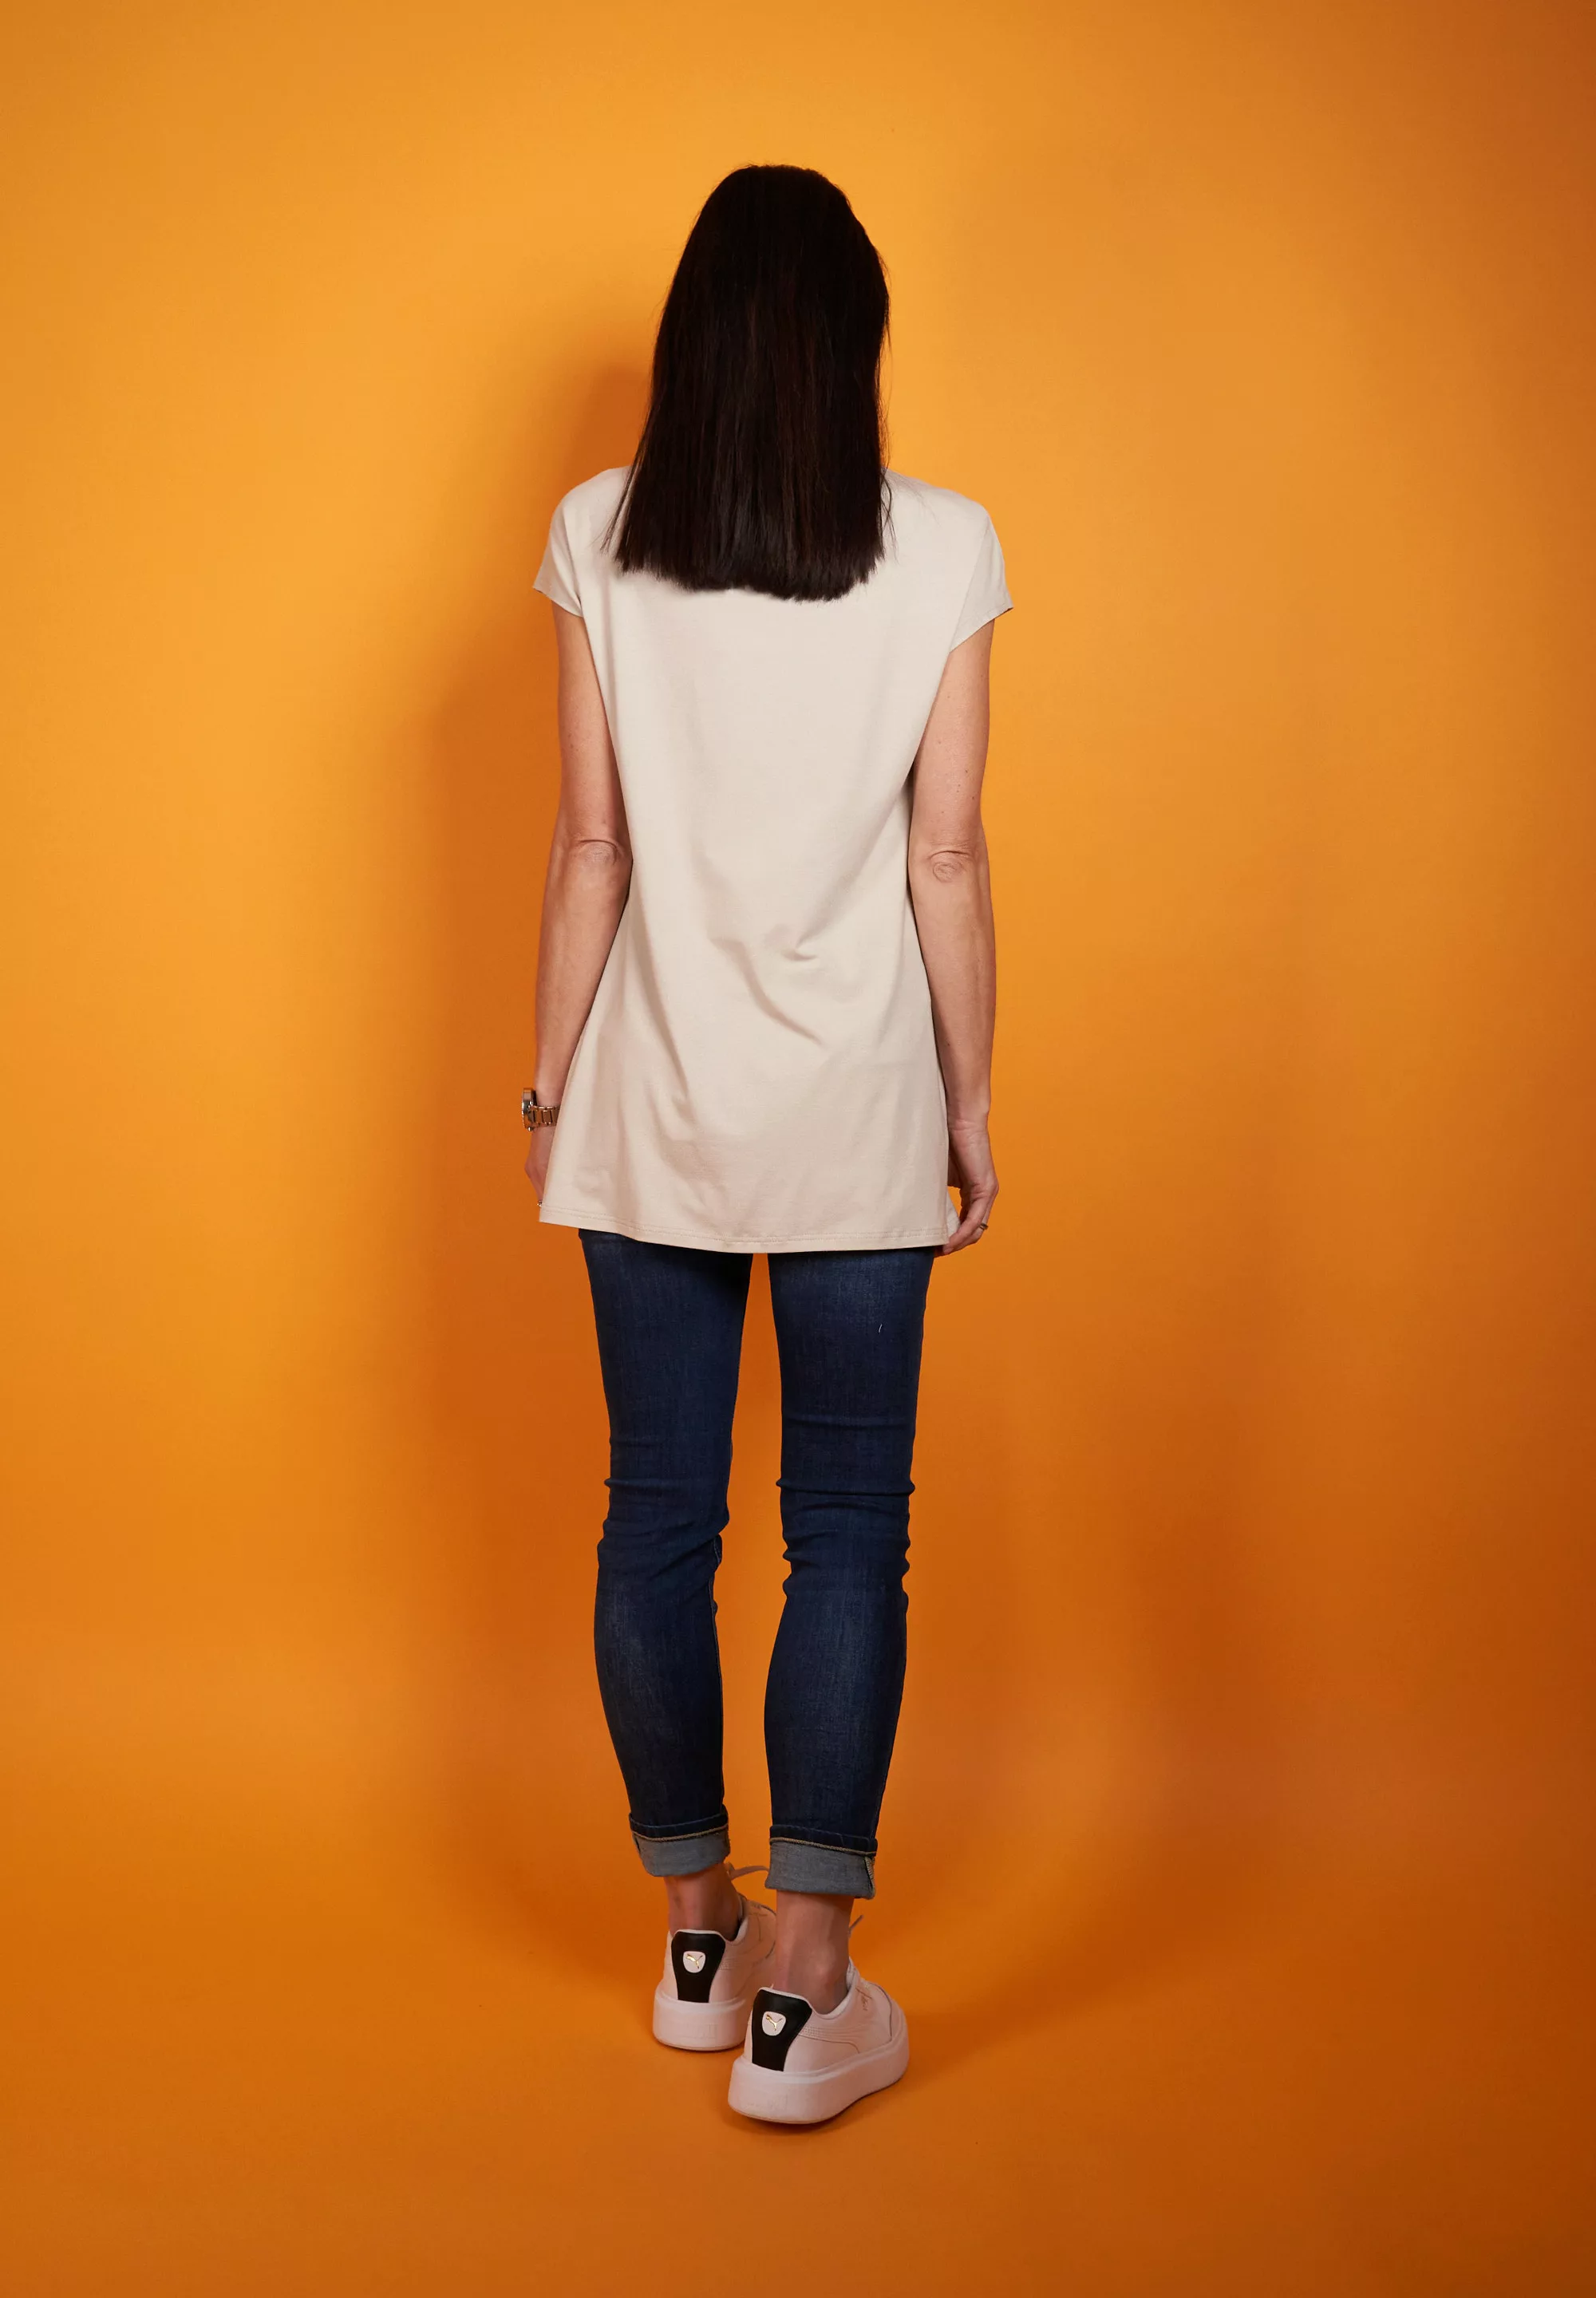 Seidel Moden Longshirt in schlichtem Design, MADE IN GERMANY günstig online kaufen